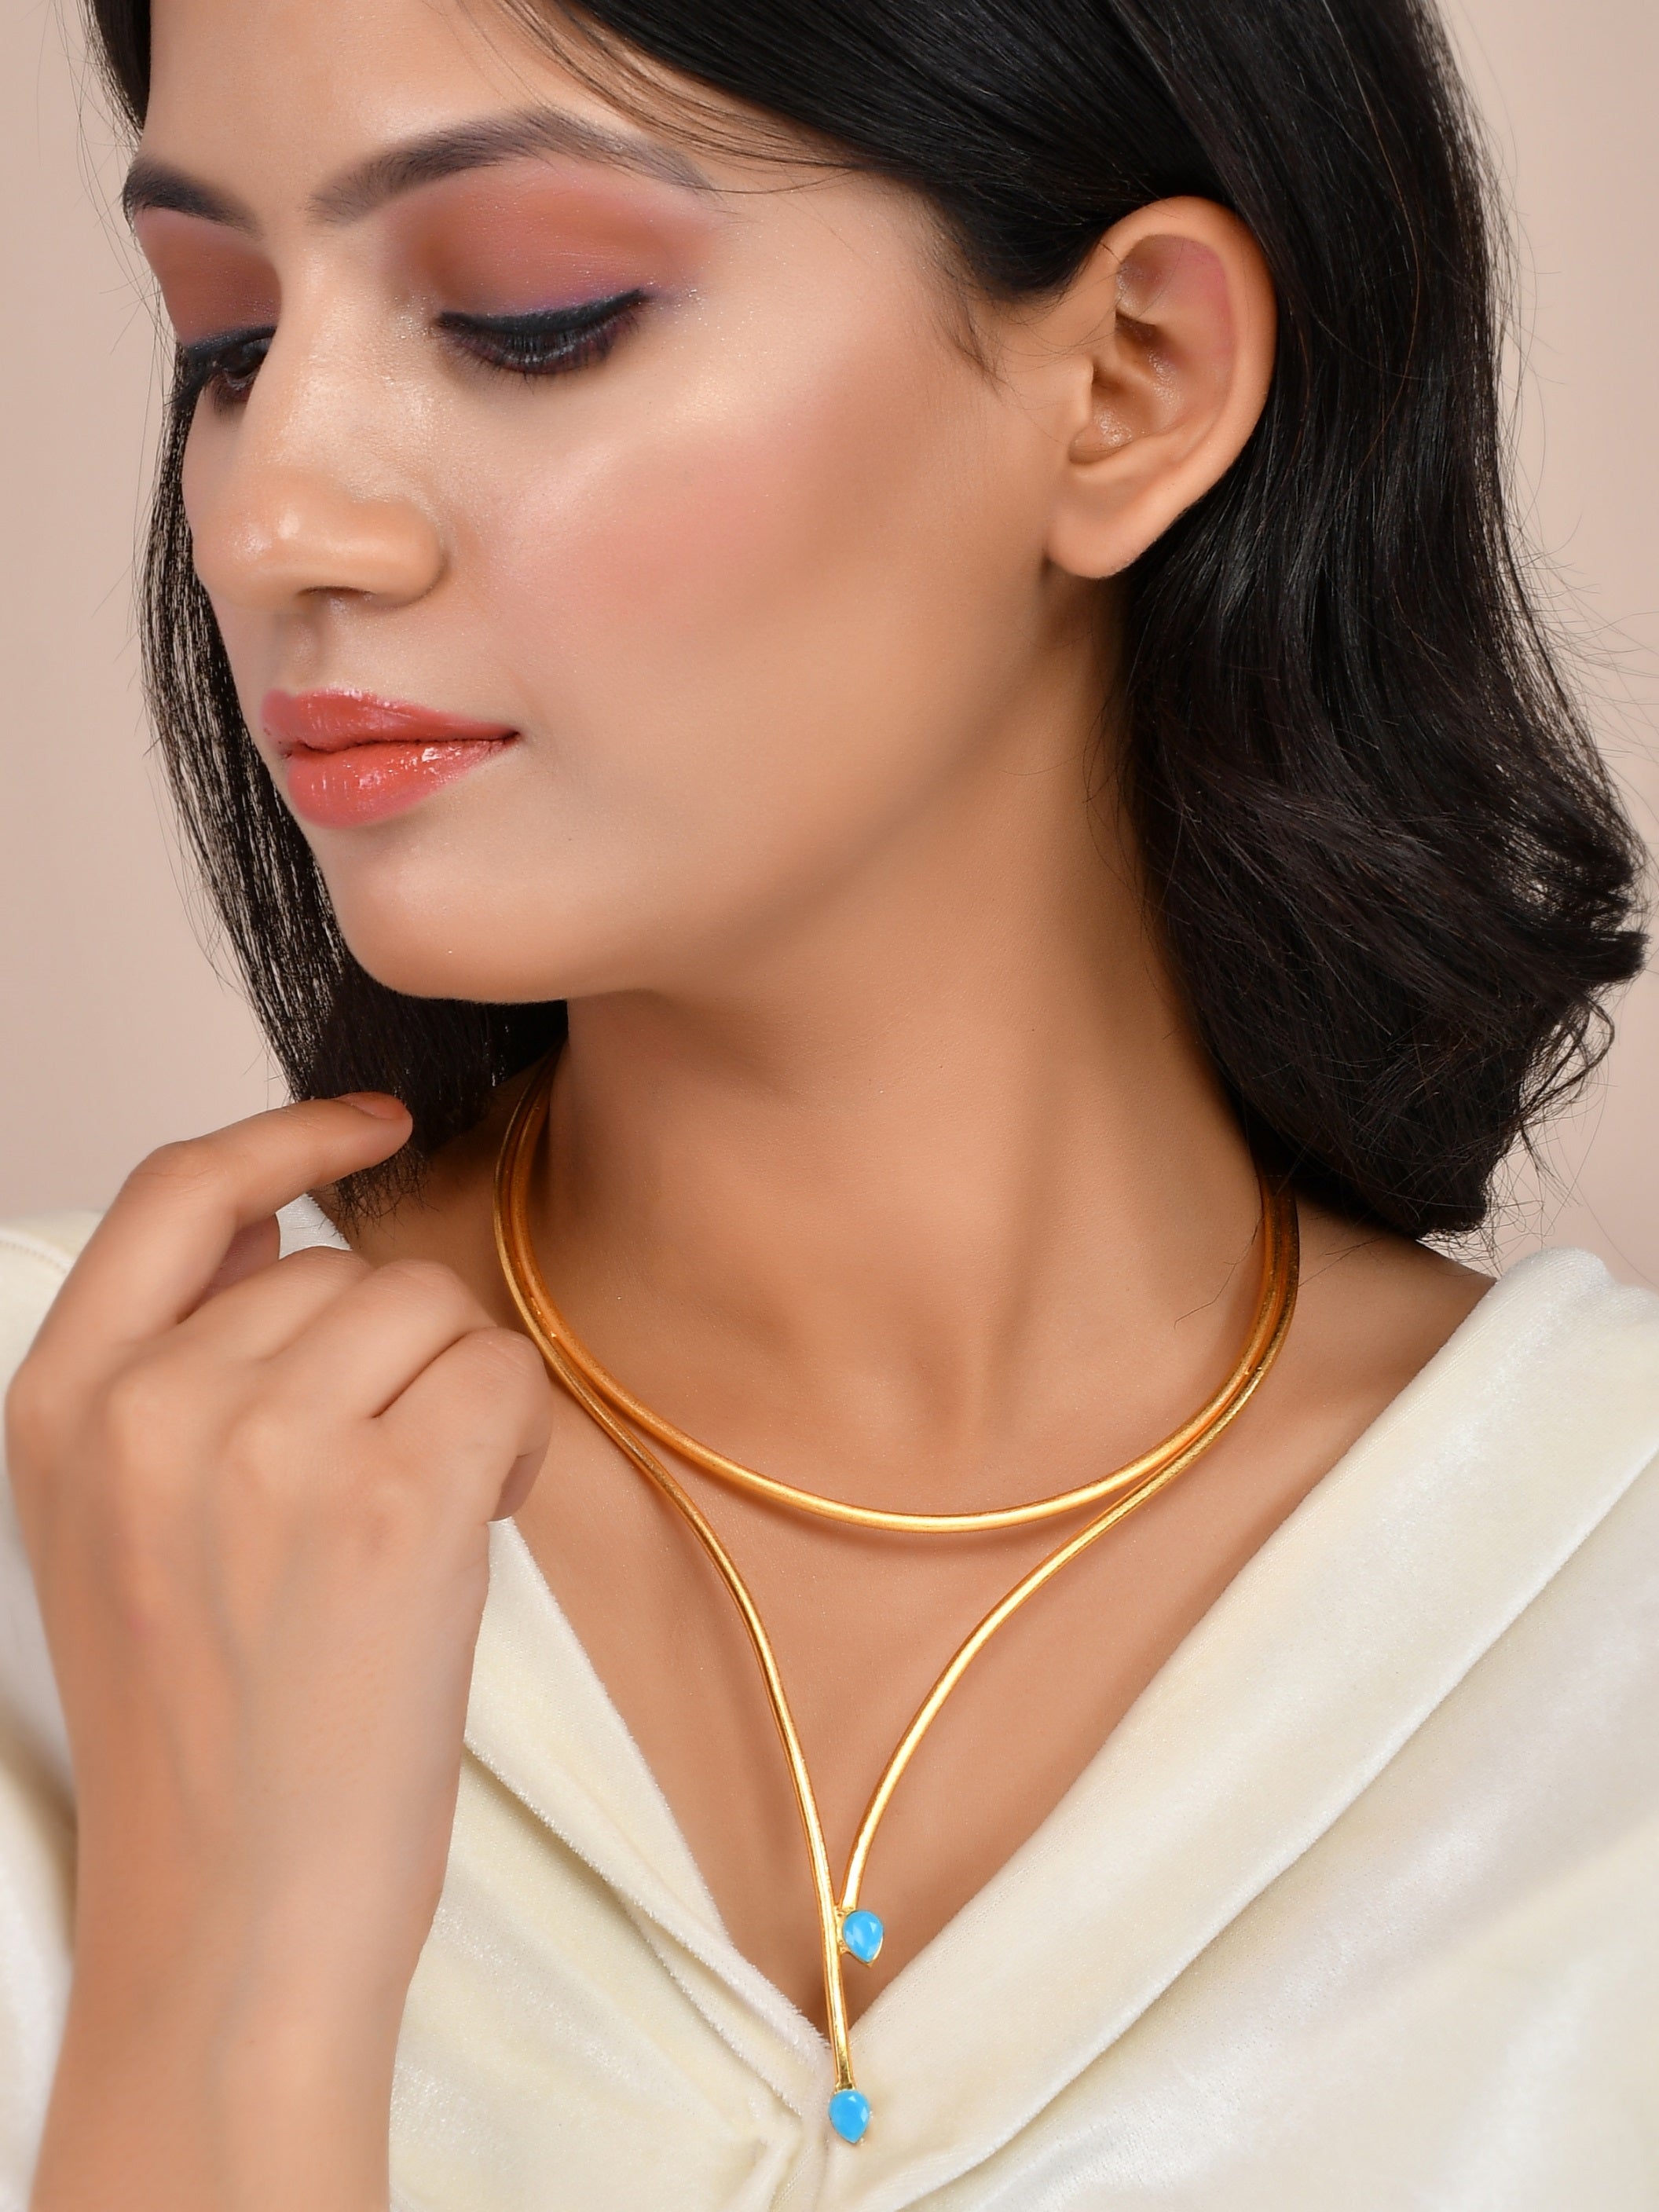 Branch (2) 21 karat gold necklace, weight 4.89 grams - مصاغات الأربش للذهب  بالسعودية قسم المتجر الإلكتروني